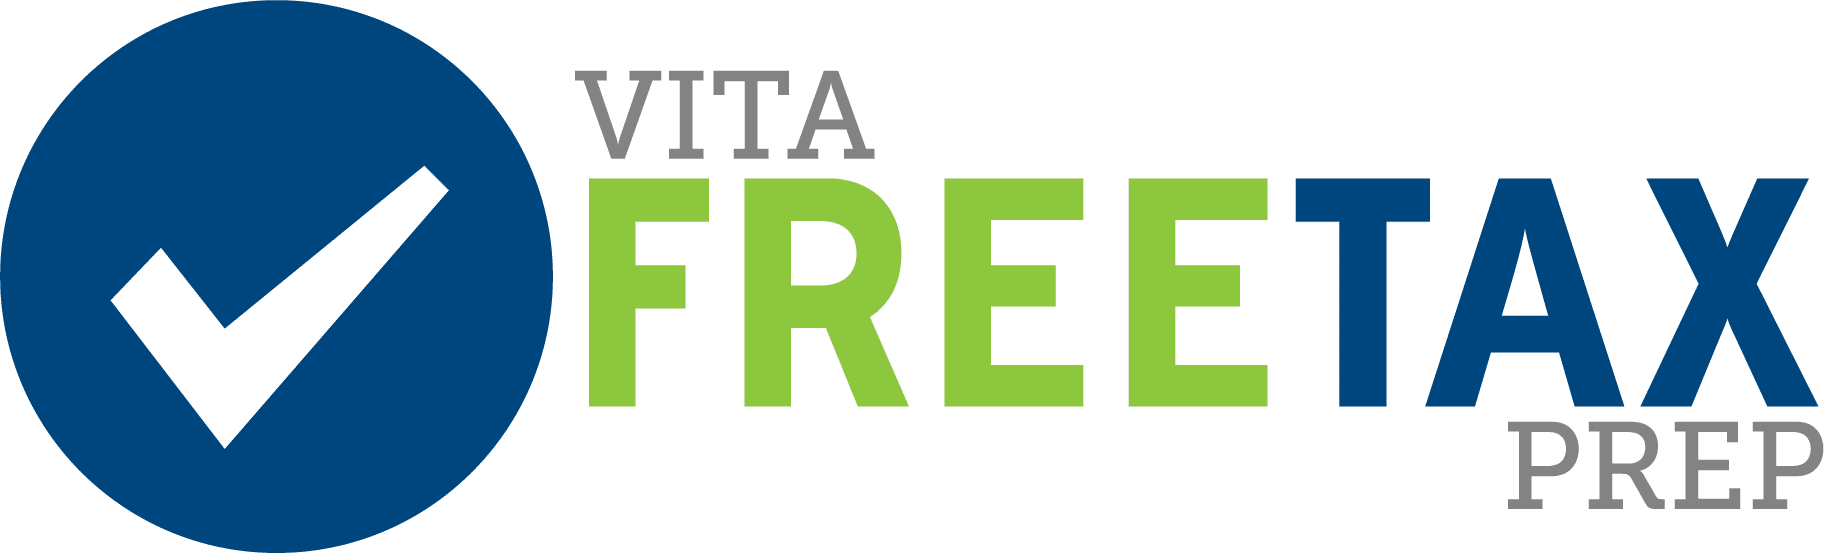 Volunteer Income Tax Assistance (VITA) free tax prep program.   